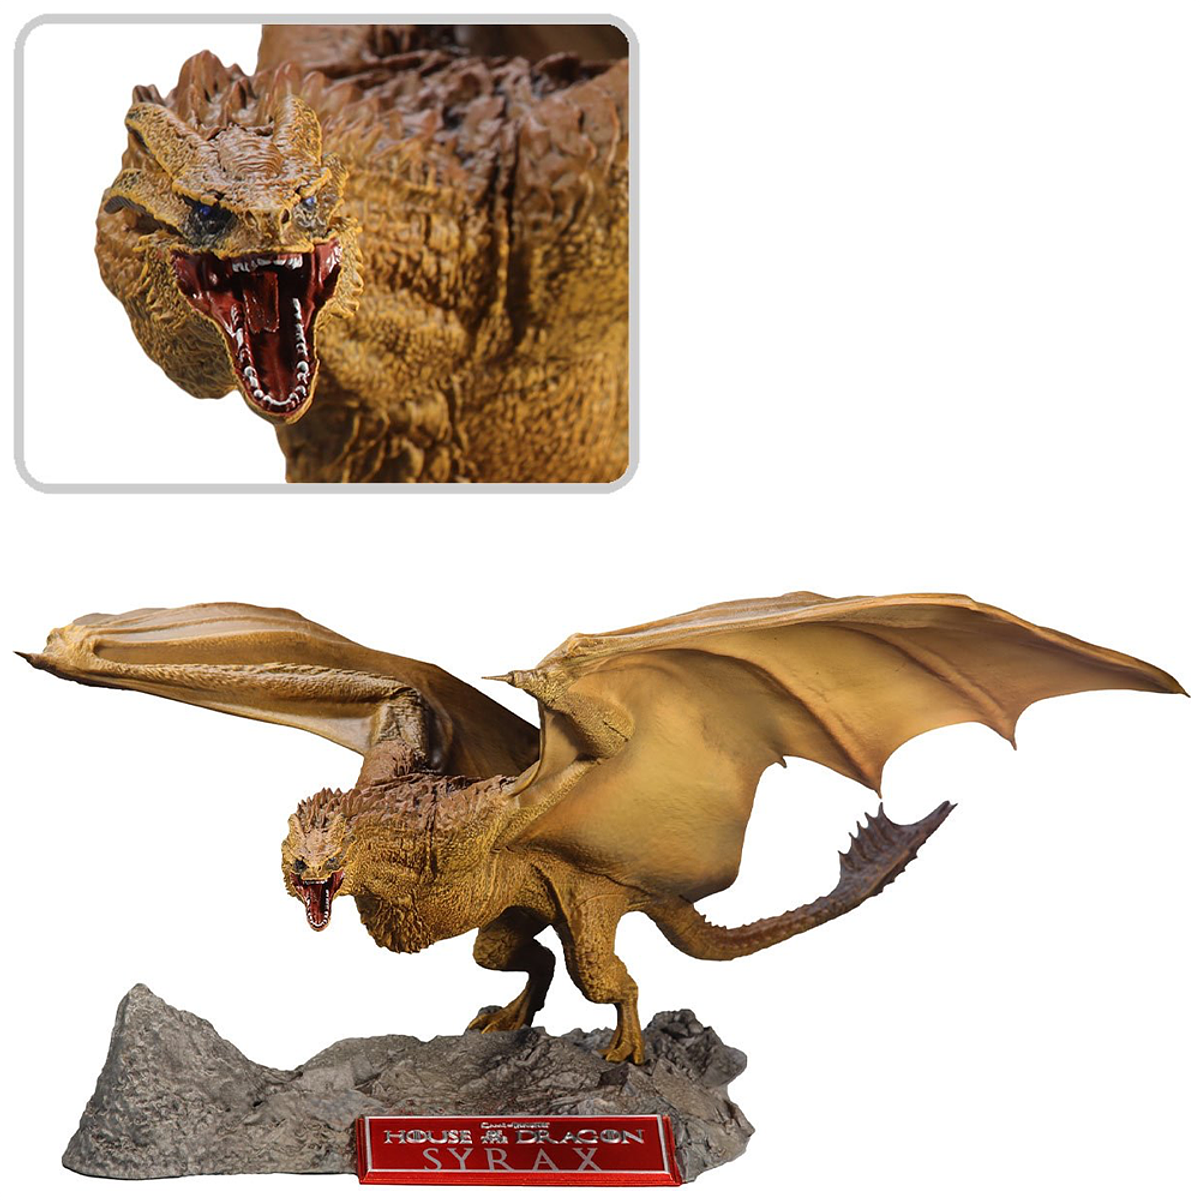 Dragões Syrax (Rhaenyra) e Caraxes (Daemon) de House of the Dragon –  Estátuas McFarlane Toys « Blog de Brinquedo